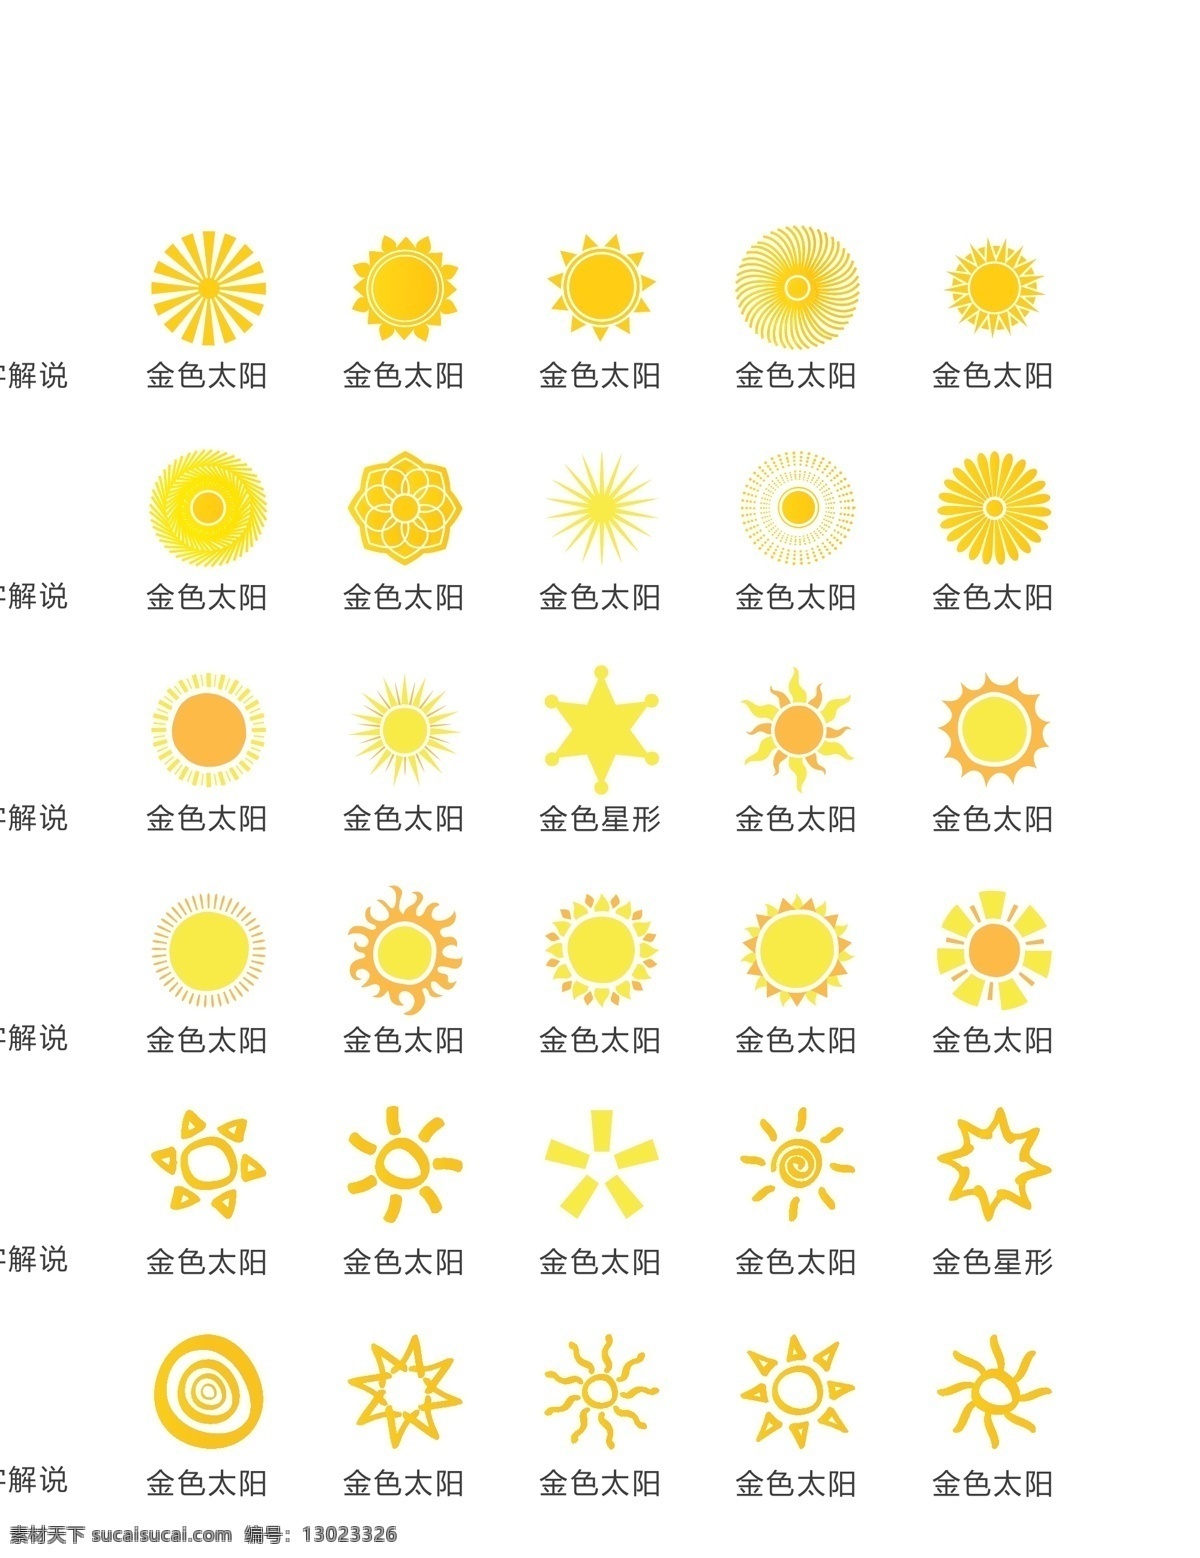 太阳图标 夏天 图标 太阳 黄色 阳光 新光 矢量 eps文件